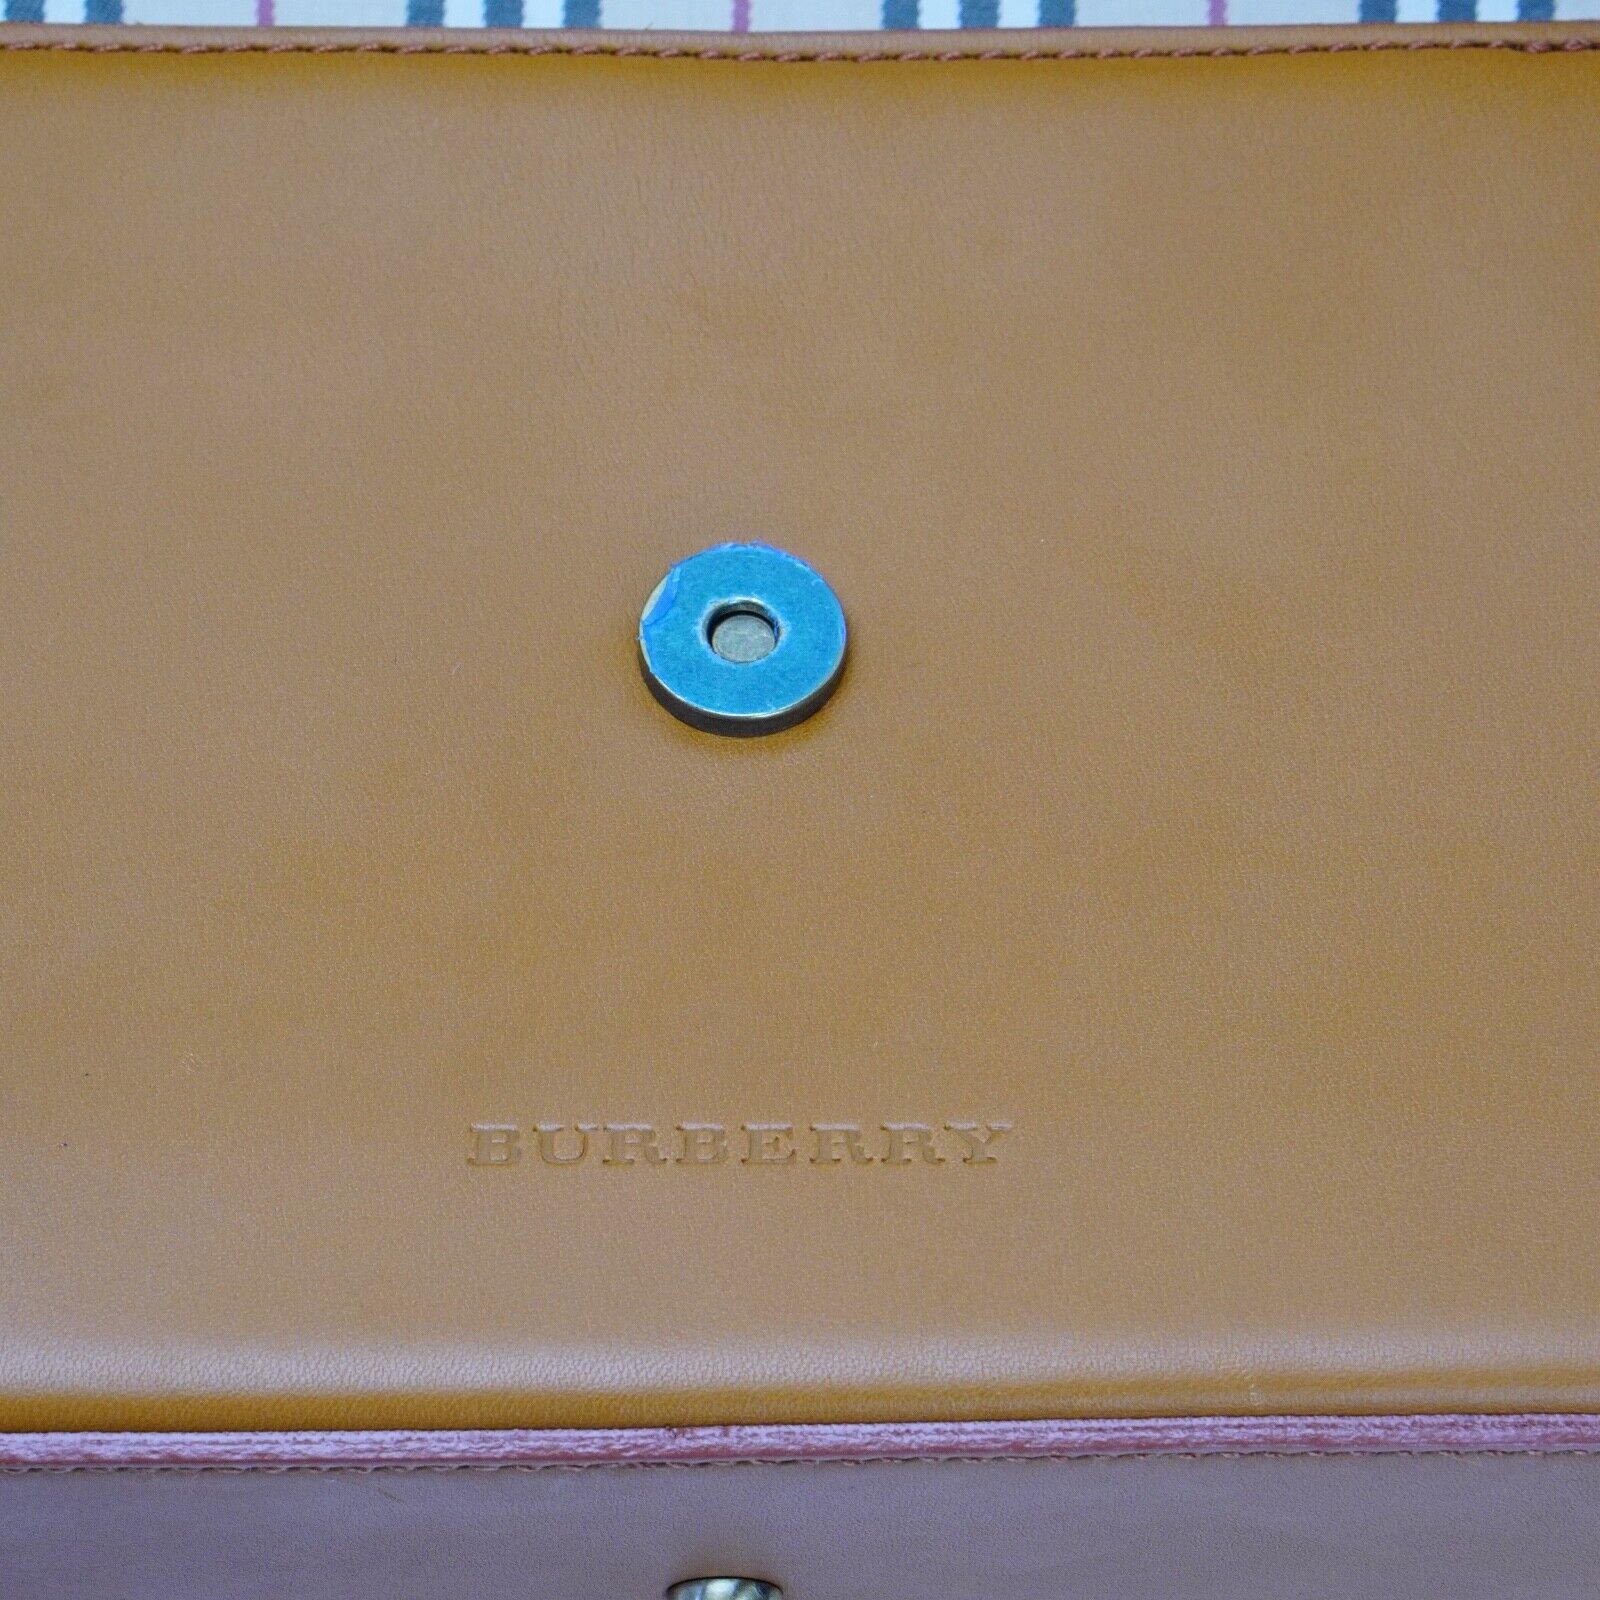 Burberry Leather Shoulder Bag Brown